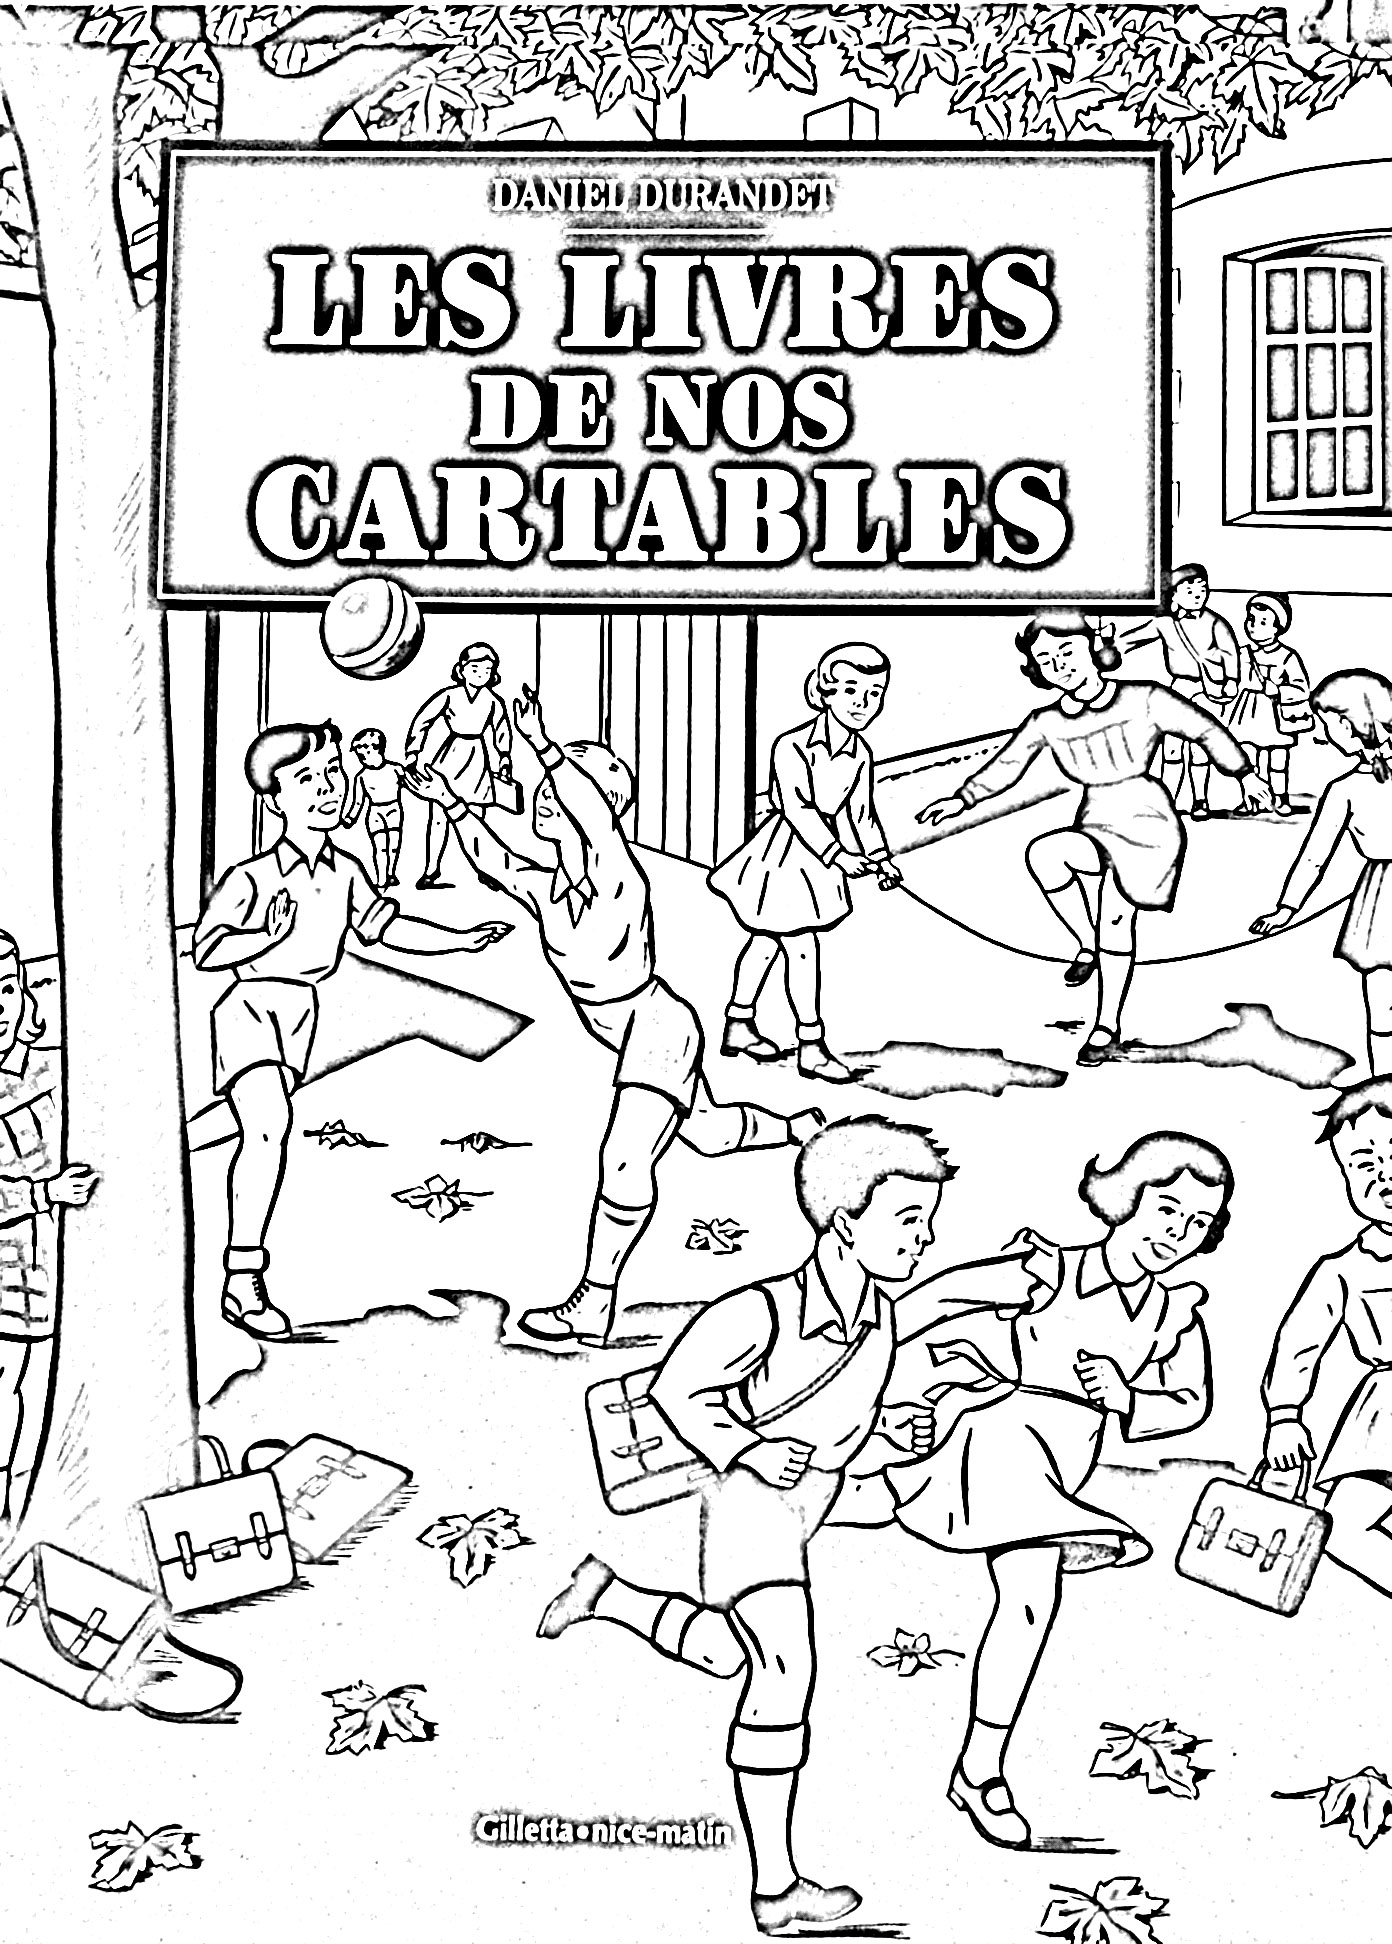 Front page of 'Les livres de nos cartables' written by Daniel Durandet